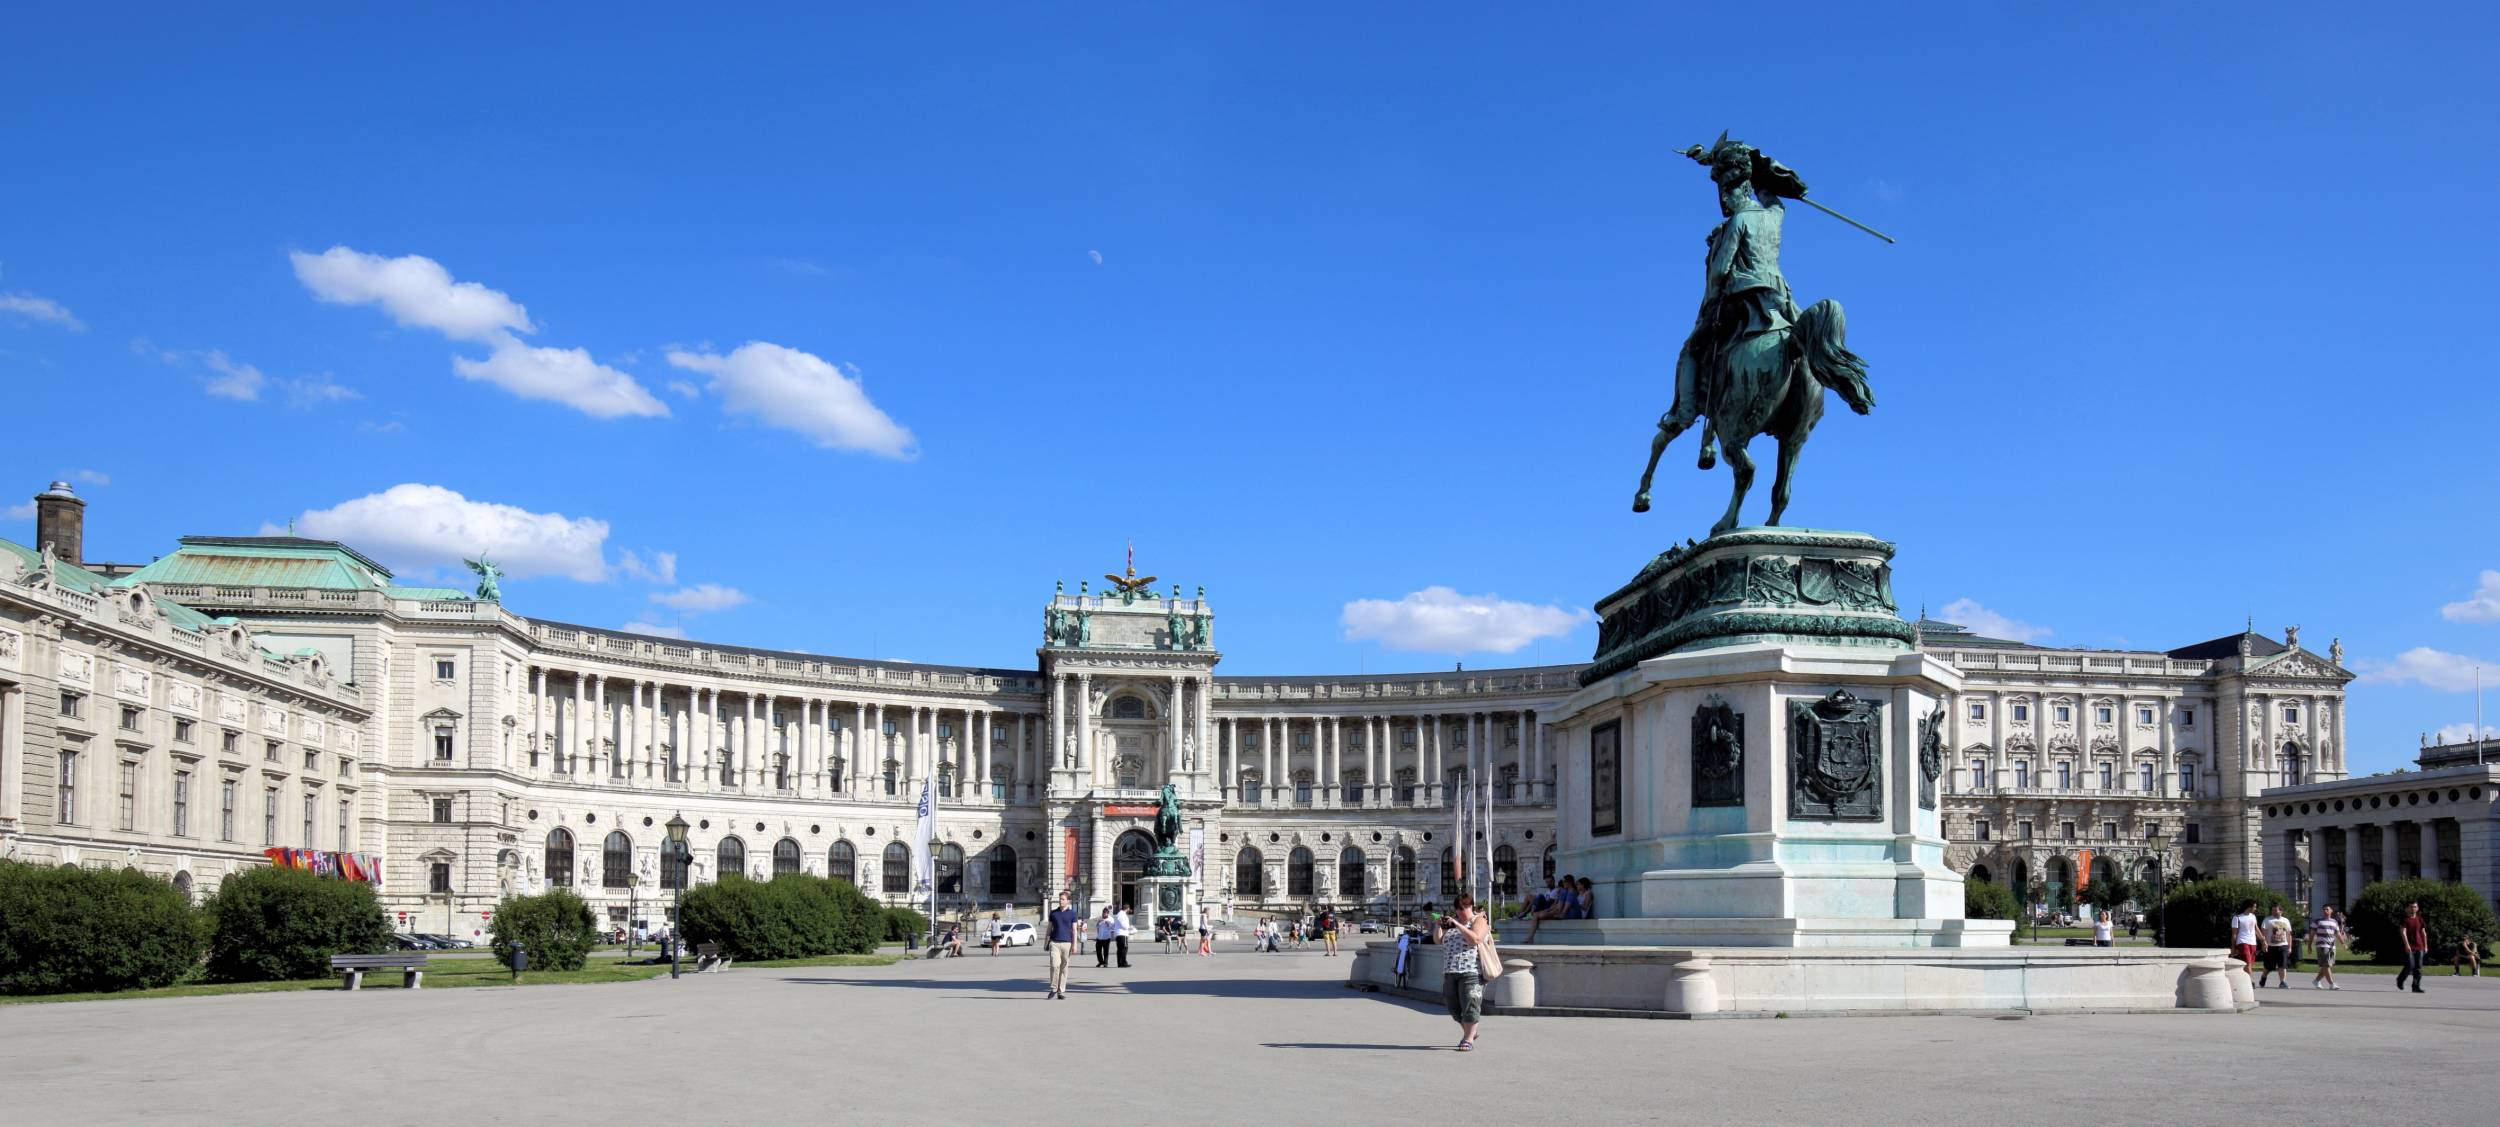 По центру площі стоїть пам'ятник переможцю турків - імператору Євгенія Савойського і переможцю Наполеона при битві при Аспені - ерцгерцогу Карлу